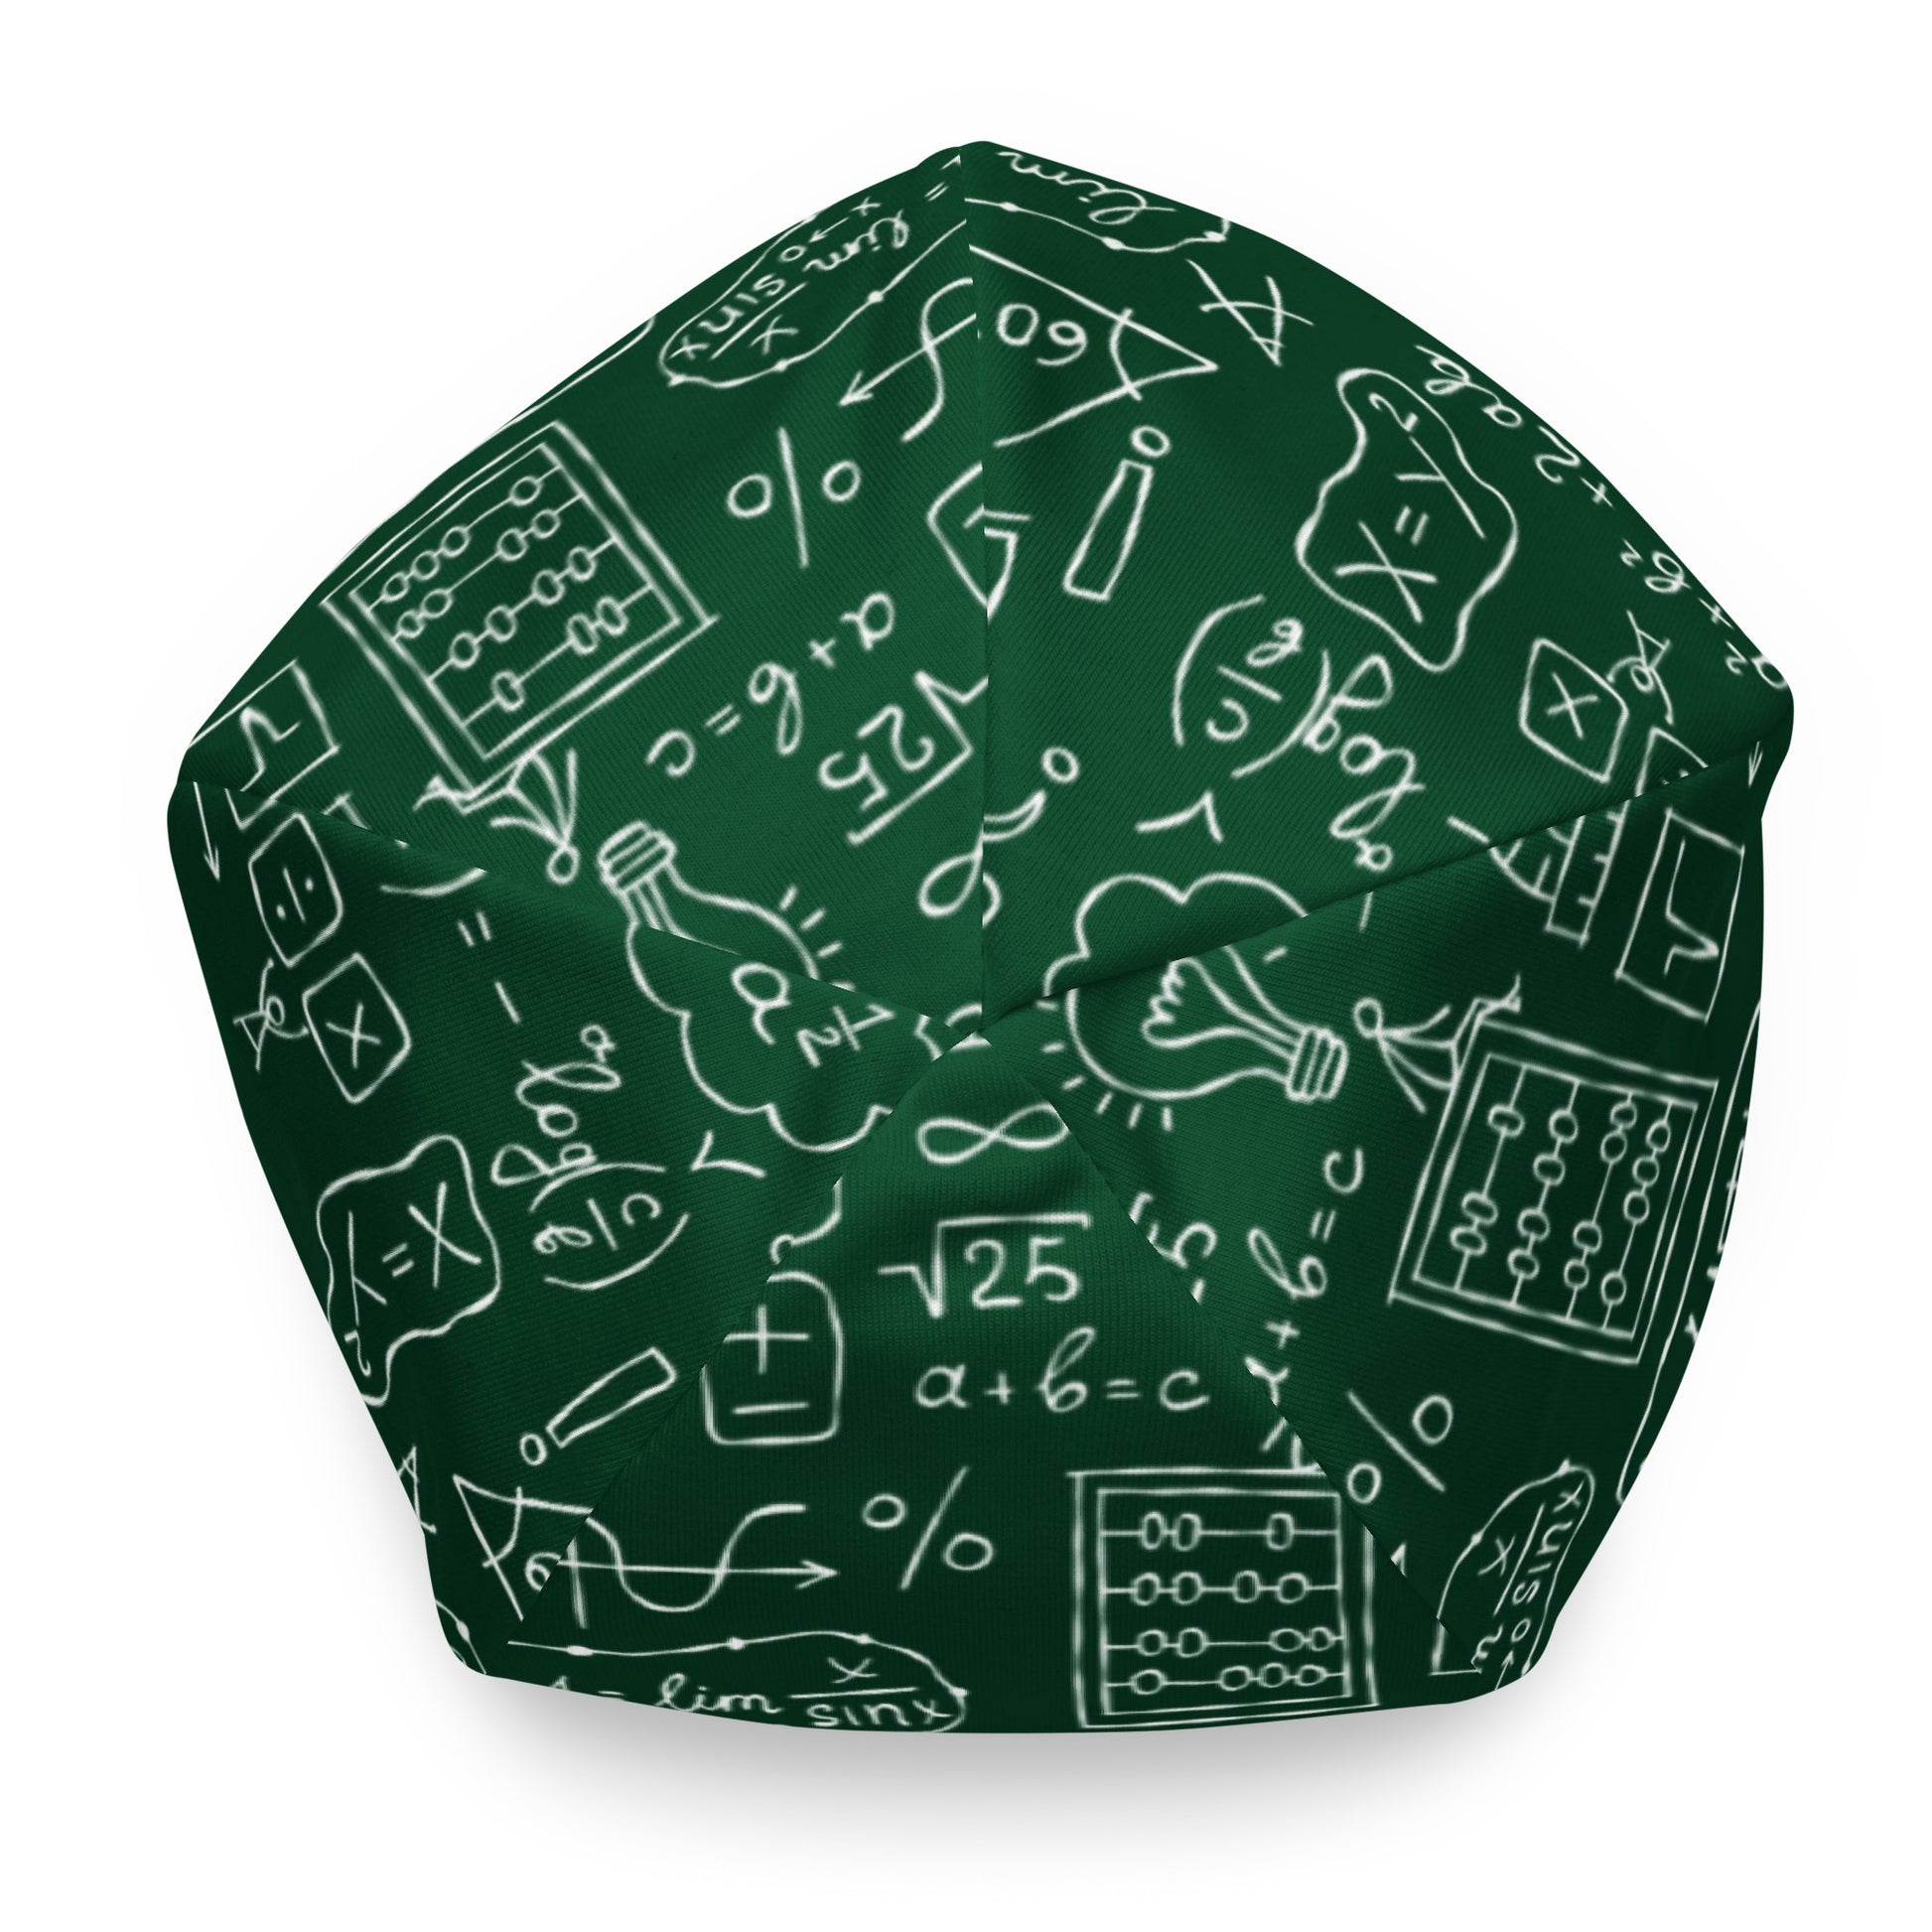 Geek Chic: Math Formulas Print Beanie Hat for the Fashion-Forward Math Lover kudrylab